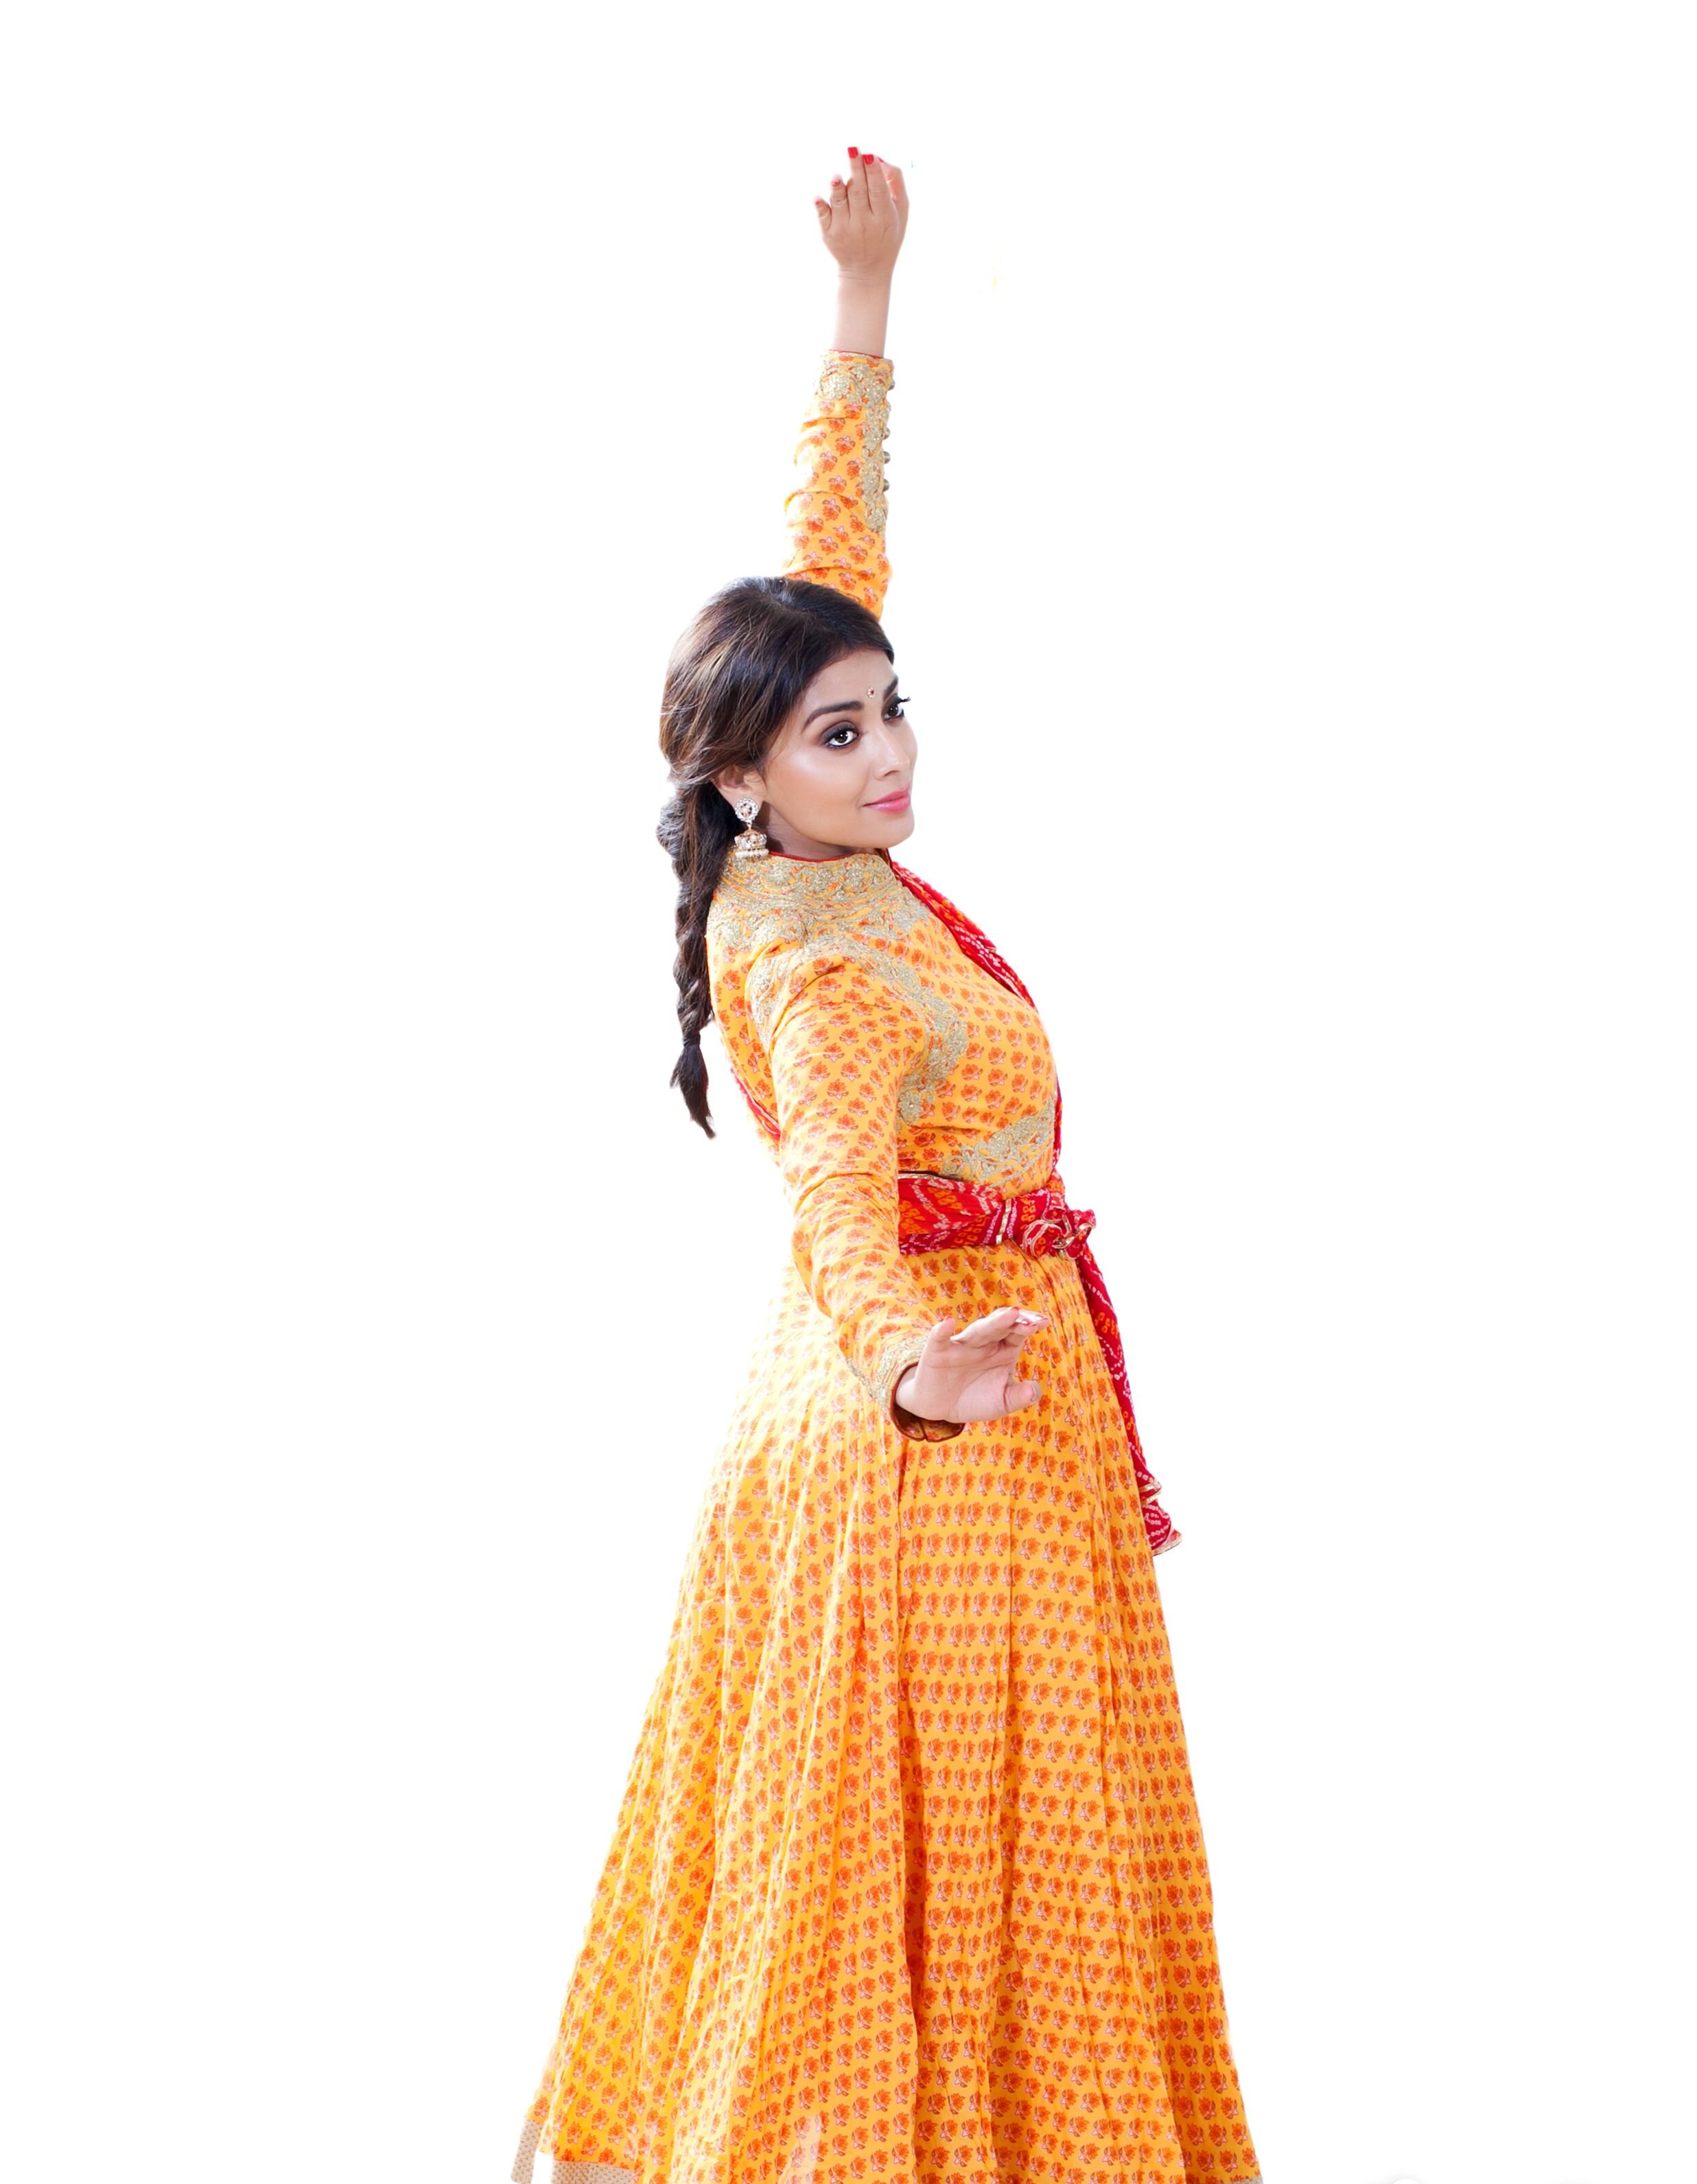 Shriya Saran in Dance Pose hd photos